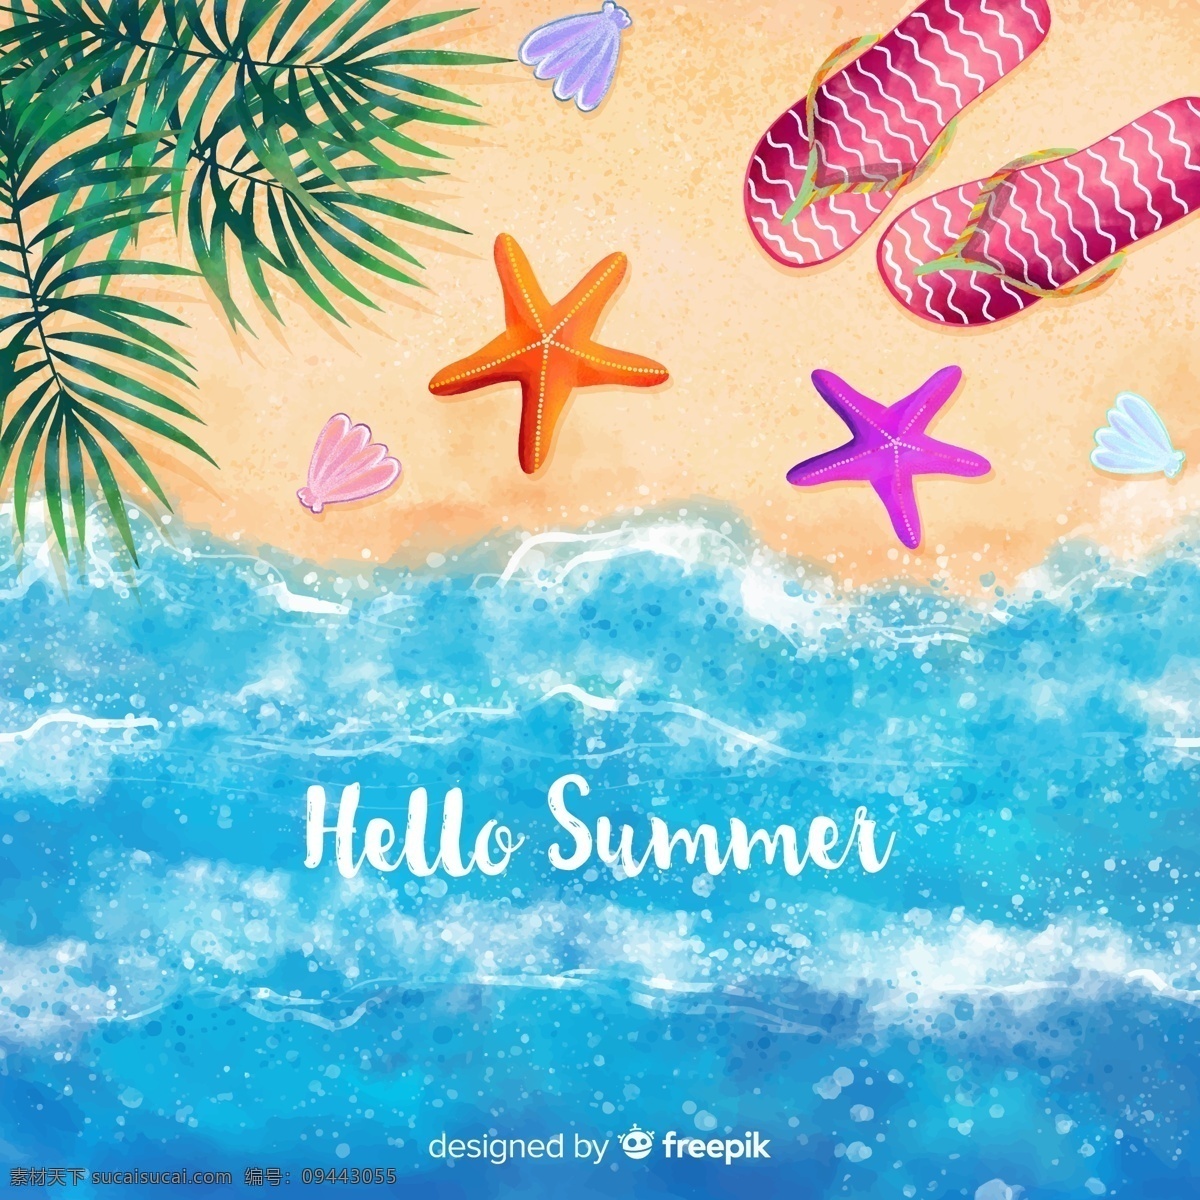 水彩 绘 夏季 大海 沙滩 水彩绘 贝壳 棕榈树叶 海星 广告海报设计